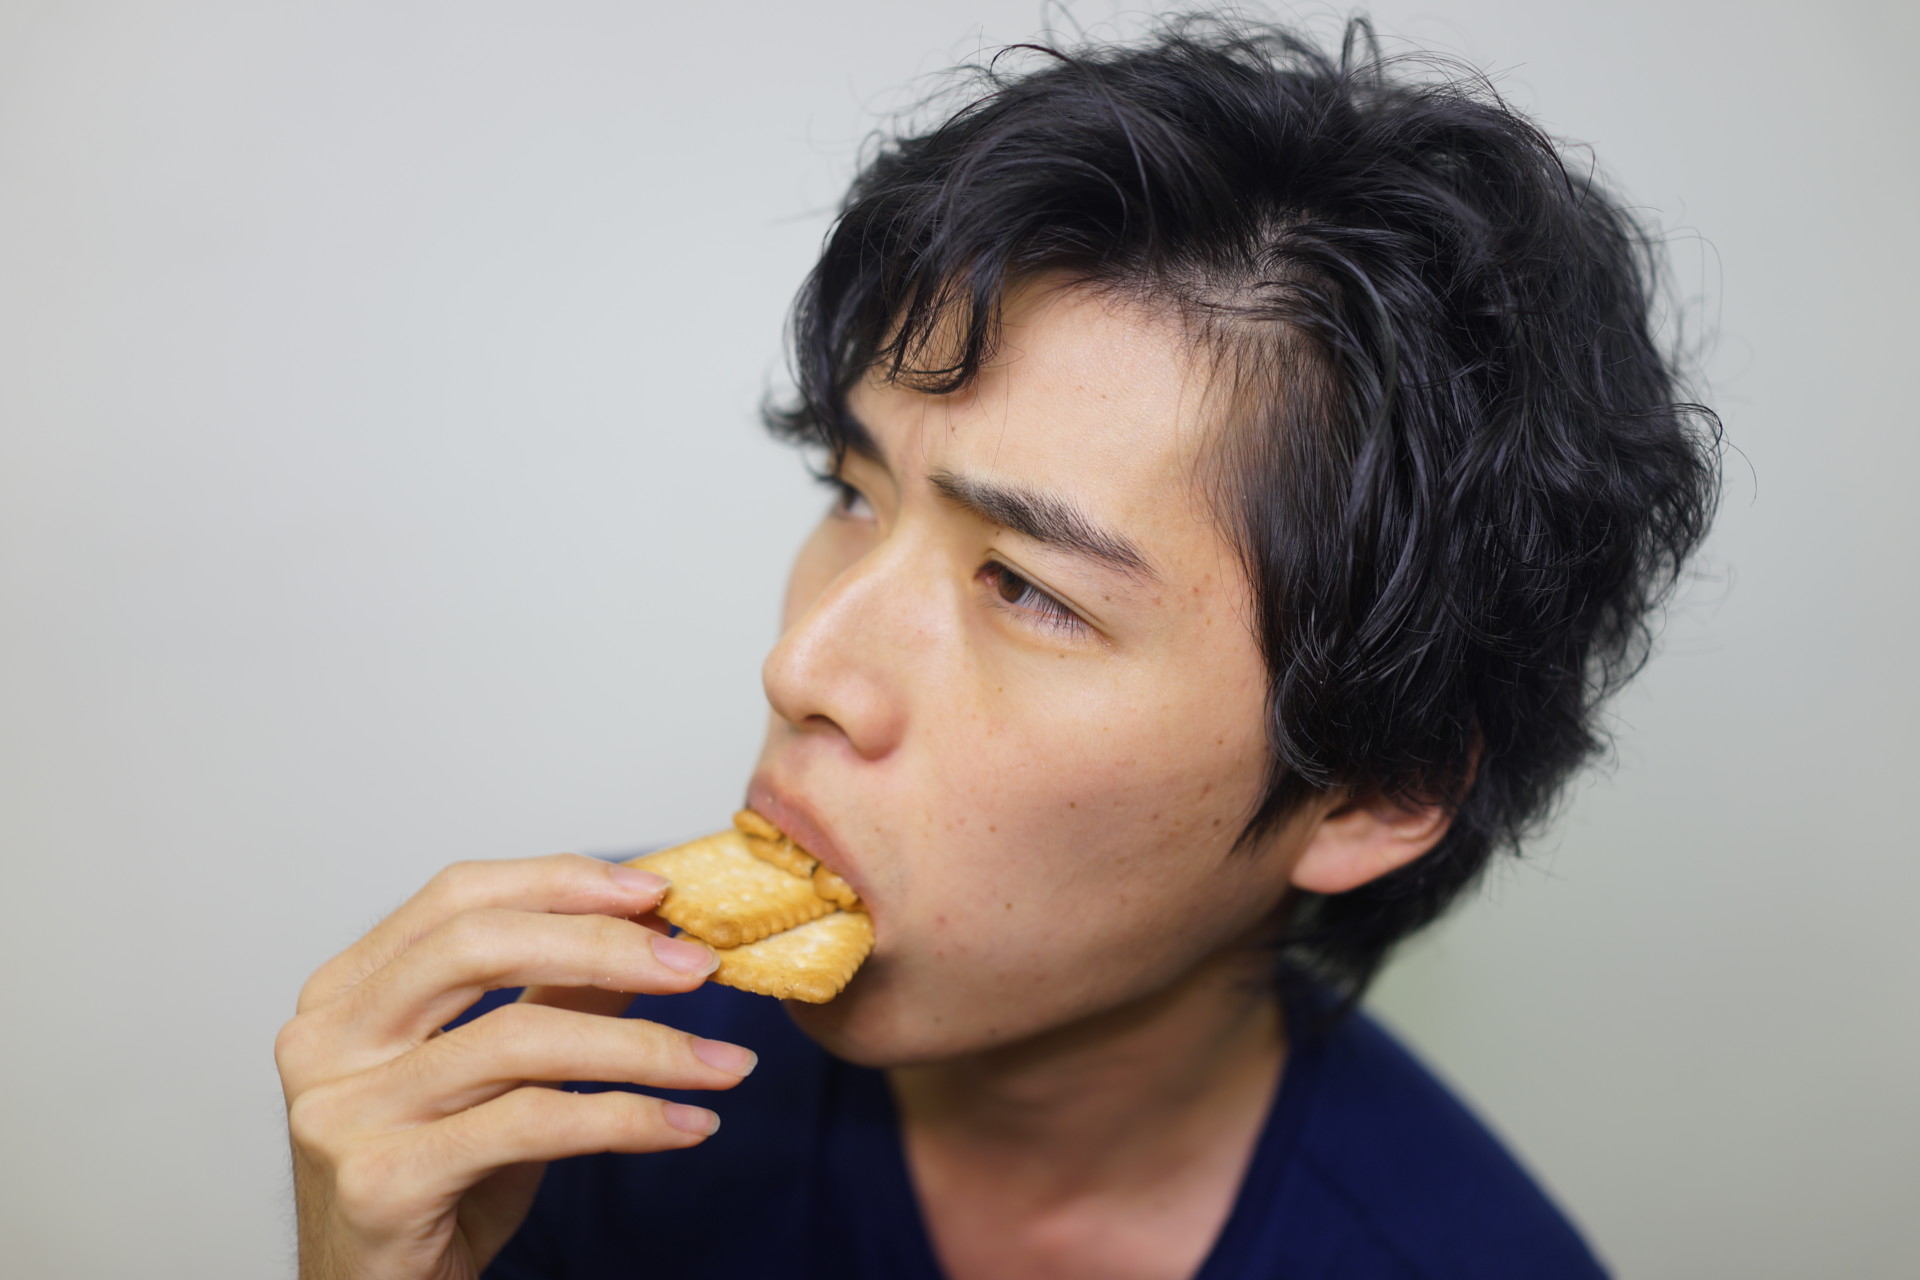 【フリー画像素材】もう食べれないって言ってるのに永遠にクッキーを食わされる – フリー素材のAPhoto（アフォト）